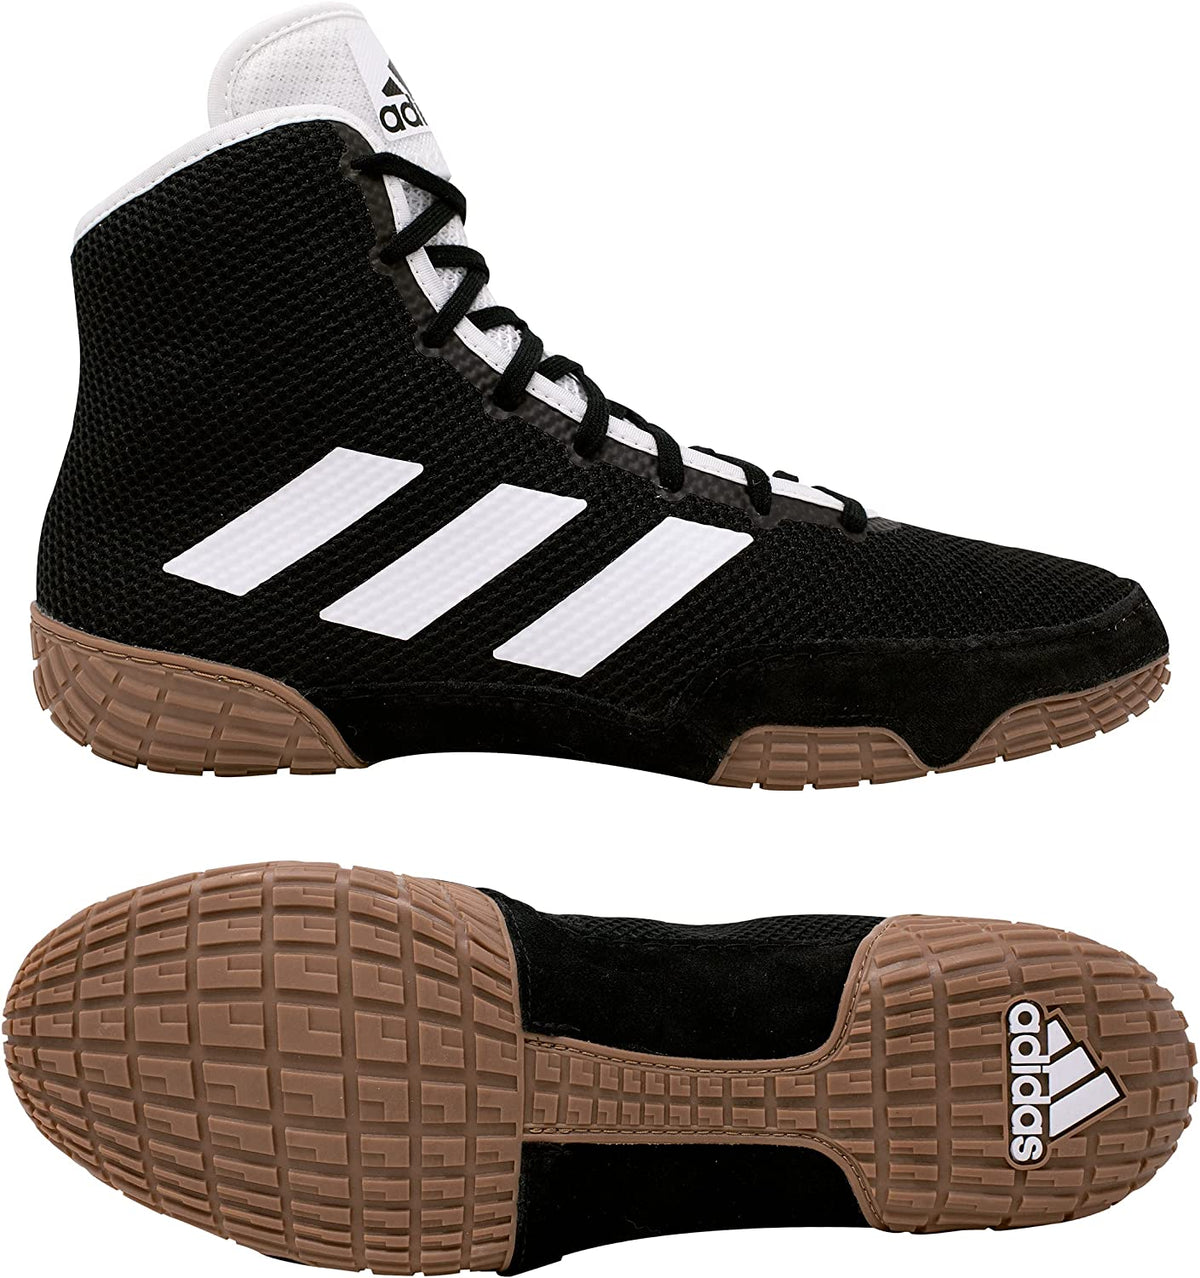 Маратонки за борба Adidas Tech-Fall в черен цвят. Сега на най-добра цена във Phantom Athletics . Обувките за борба Adidas са сред най-търсените обувки сред борците по целия свят, тъй като предлагат превъзходно качество, съчетано с максимален комфорт. Здравата подметка осигурява сцепление върху тепиха за борба. 